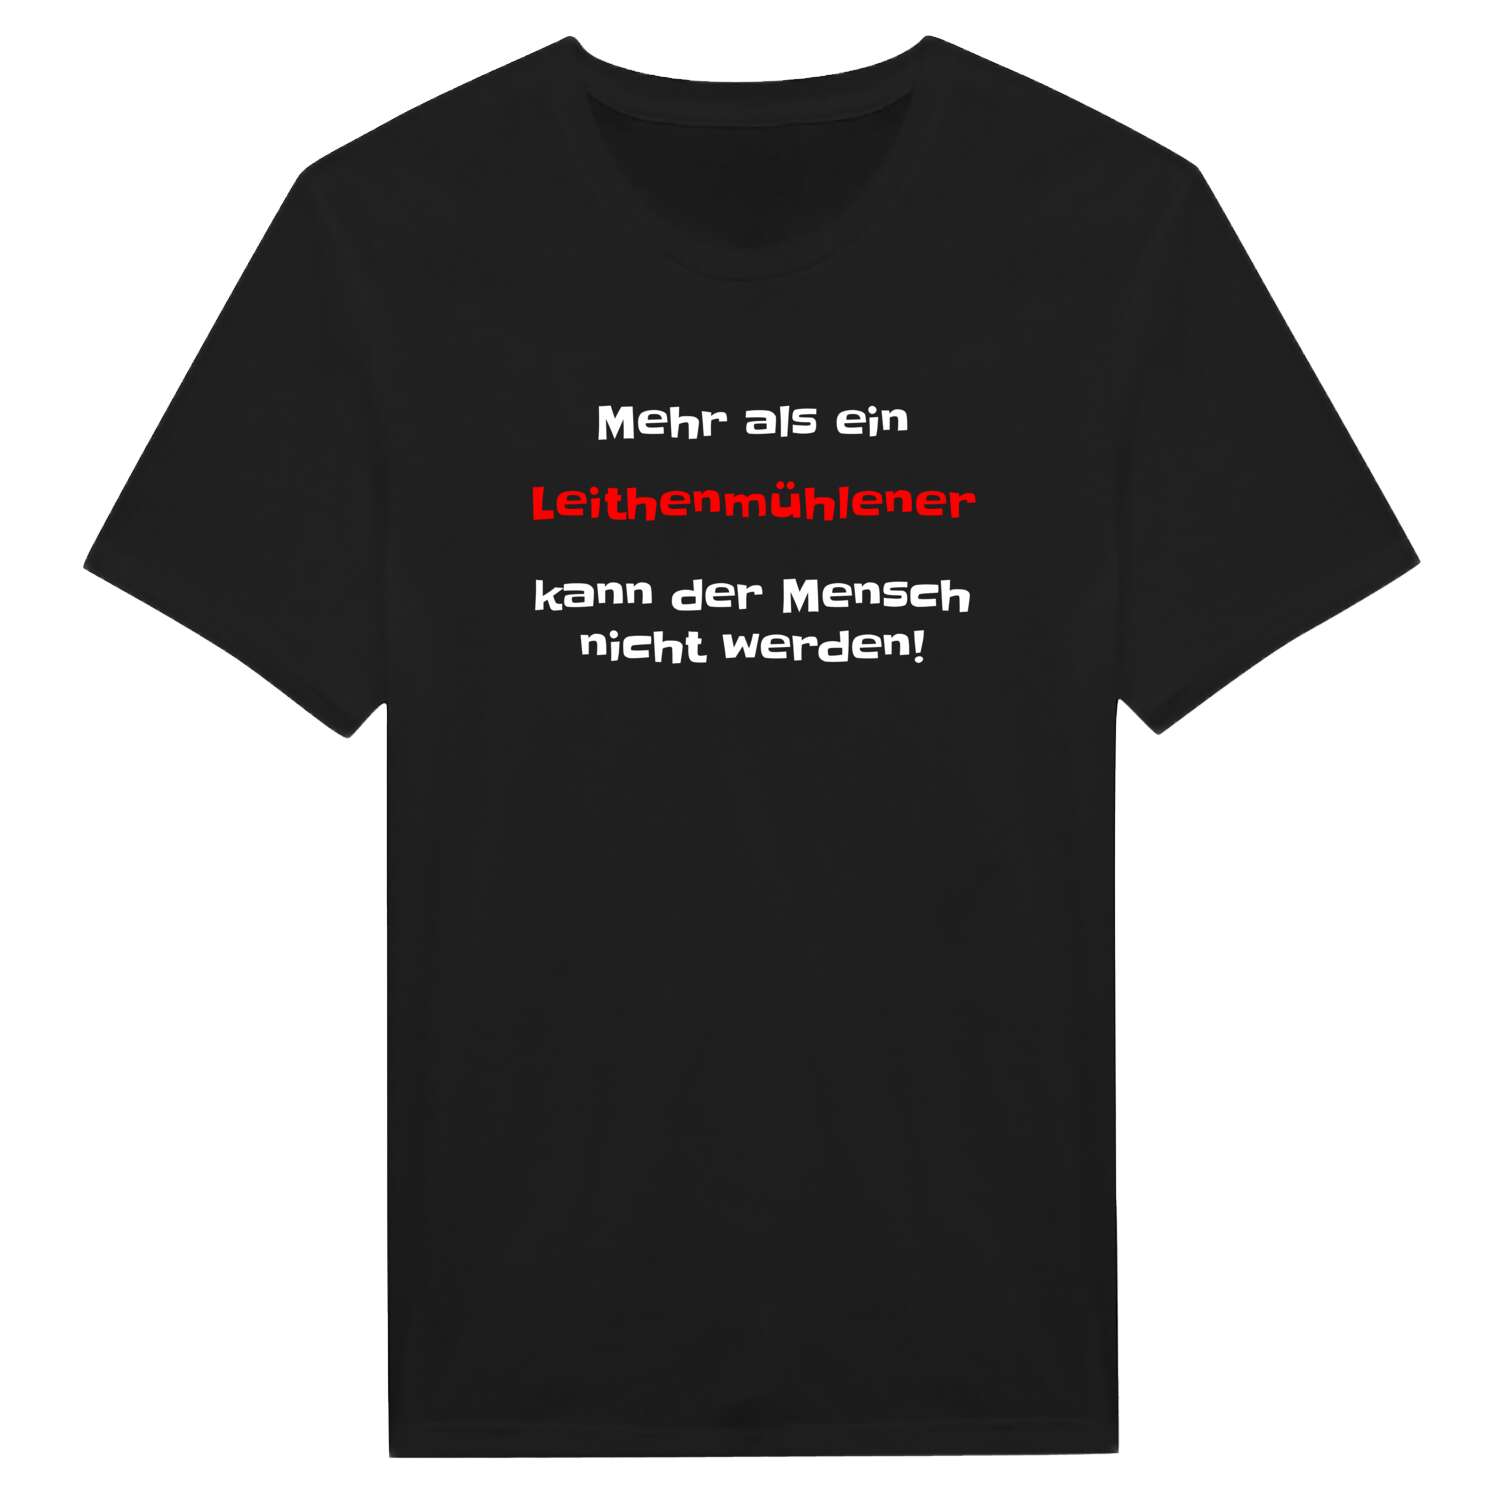 Leithenmühle T-Shirt »Mehr als ein«